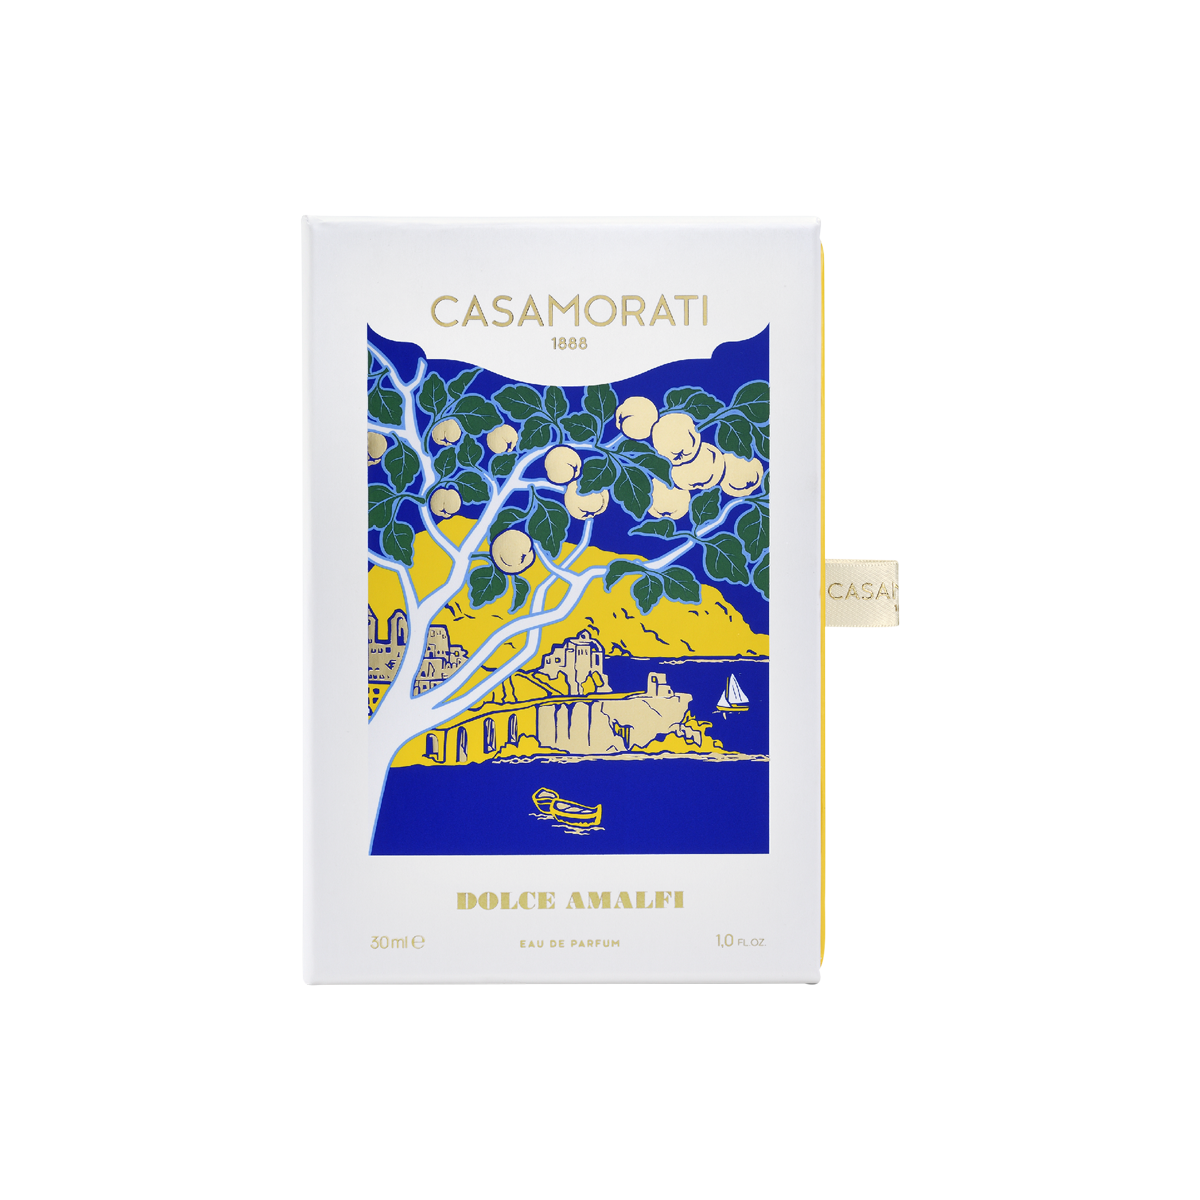 Casamorati - Dolce Amalfi Eau de Parfum